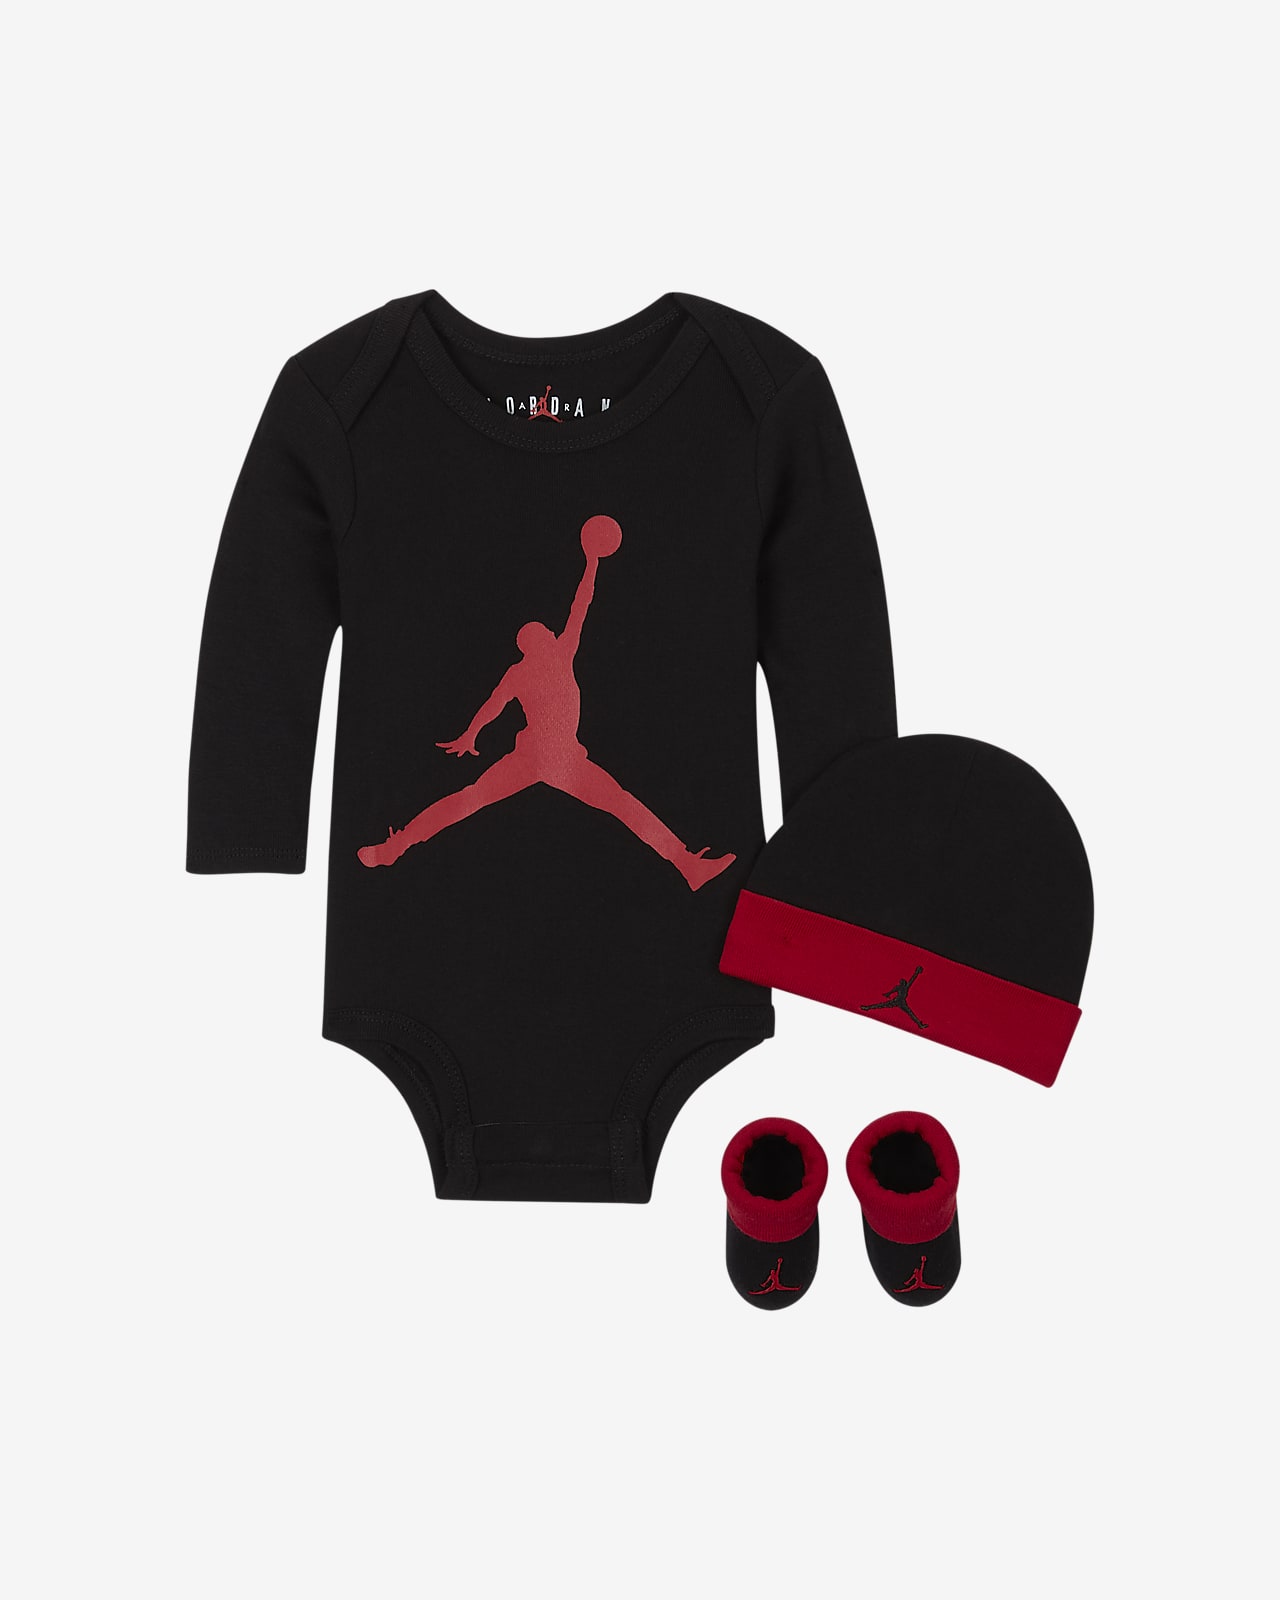 Jordan Conjunto de tres piezas - (0-12 M). Nike ES